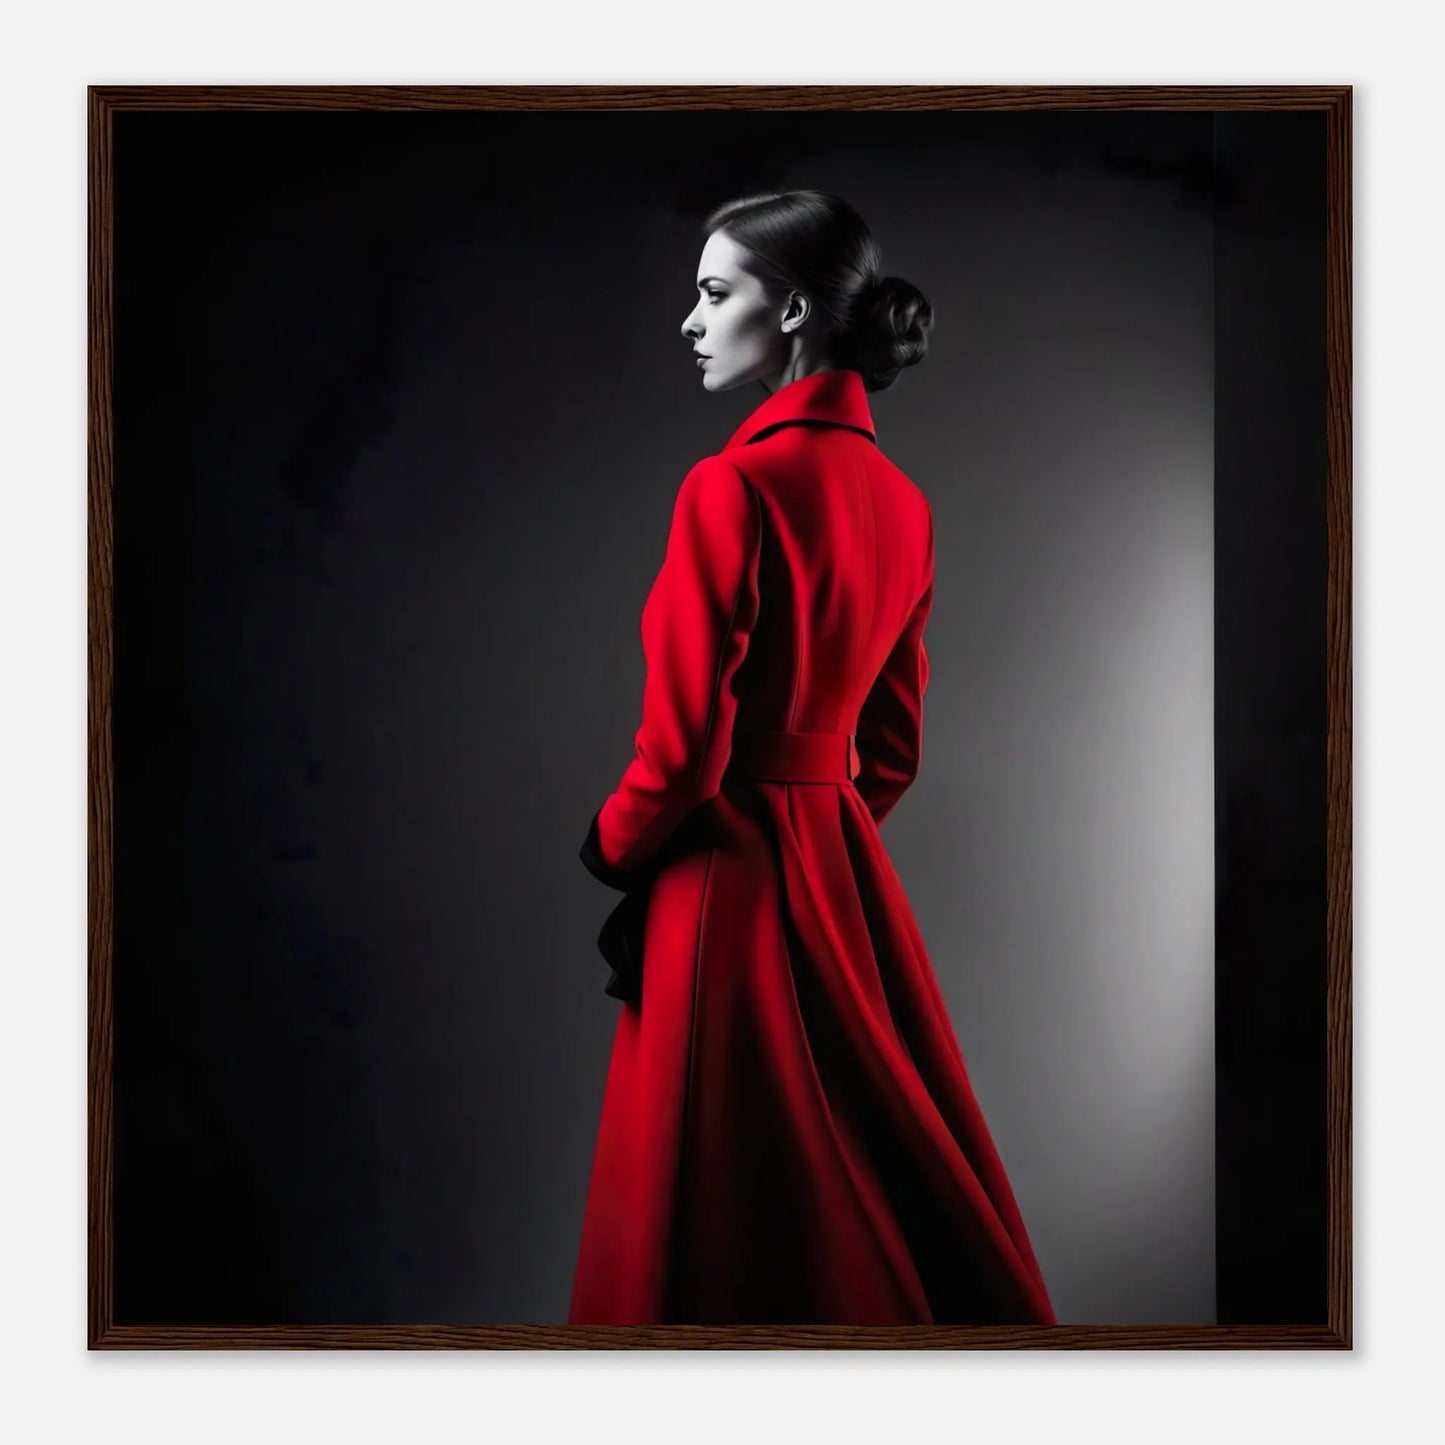 Gerahmtes Premium-Poster - Frau im roten Mantel - Schwarz-Weiß, KI-Kunst - RolConArt, Schwarz-Weiß mit Akzentfarben, 70x70-cm-28x28-Dunkler-Holzrahmen